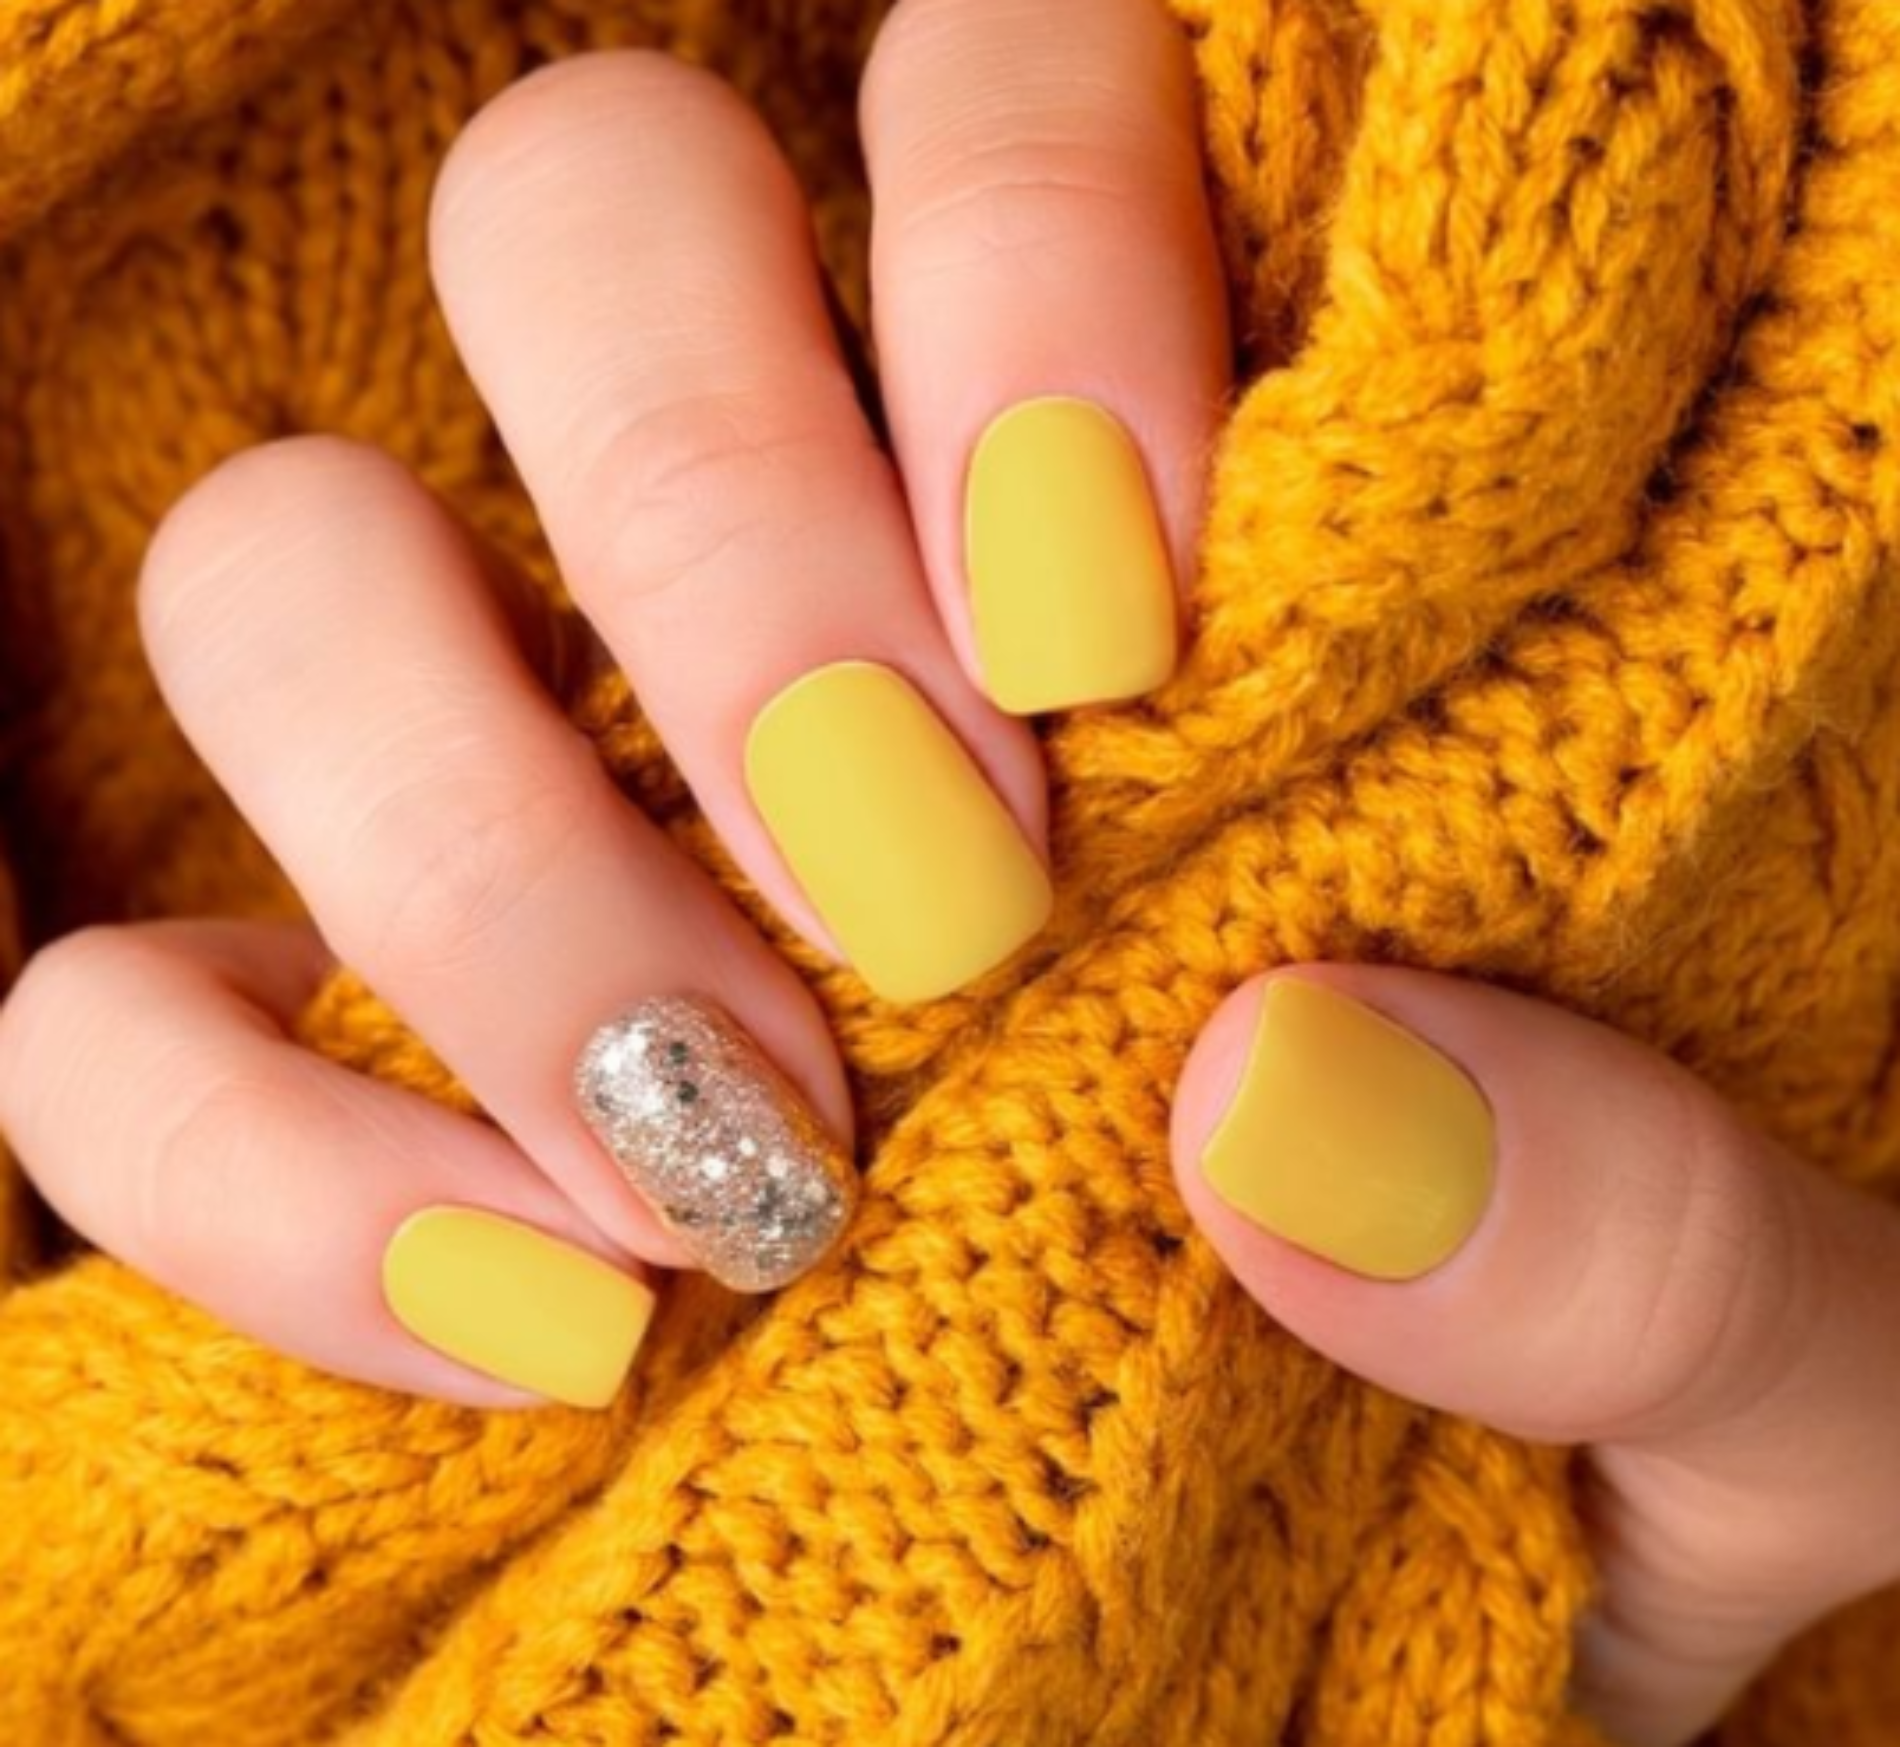 Amarillo y gris, los colores de la manicure en el 2021